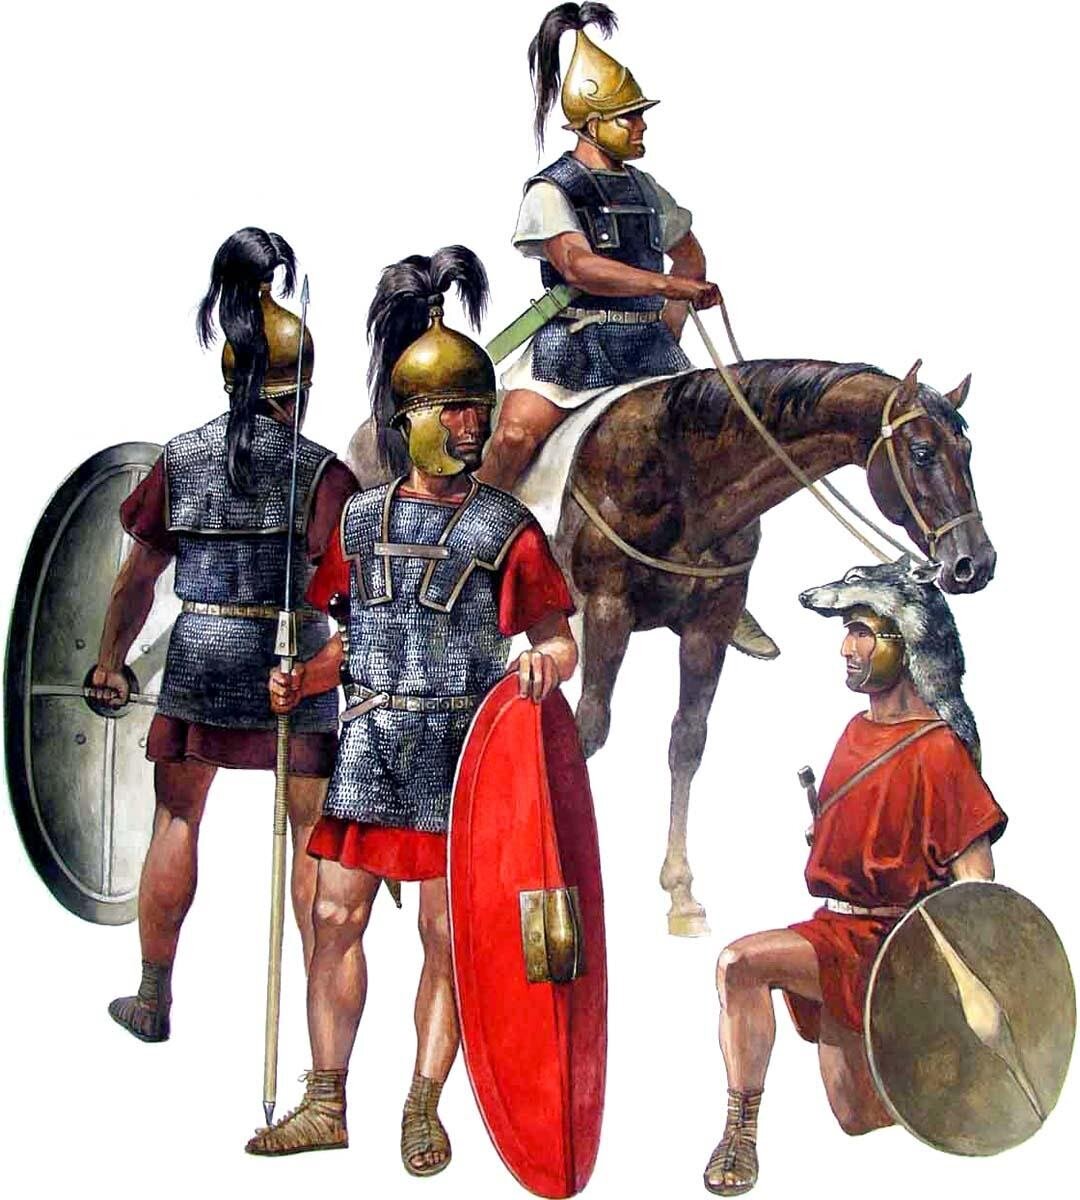 Римская армия до нашей эры. Римский легионер 1 век до н.э. Армия древнего Рима легионеры. Римский легионер v века н.э.. Римские легионеры 4 века до н.э..